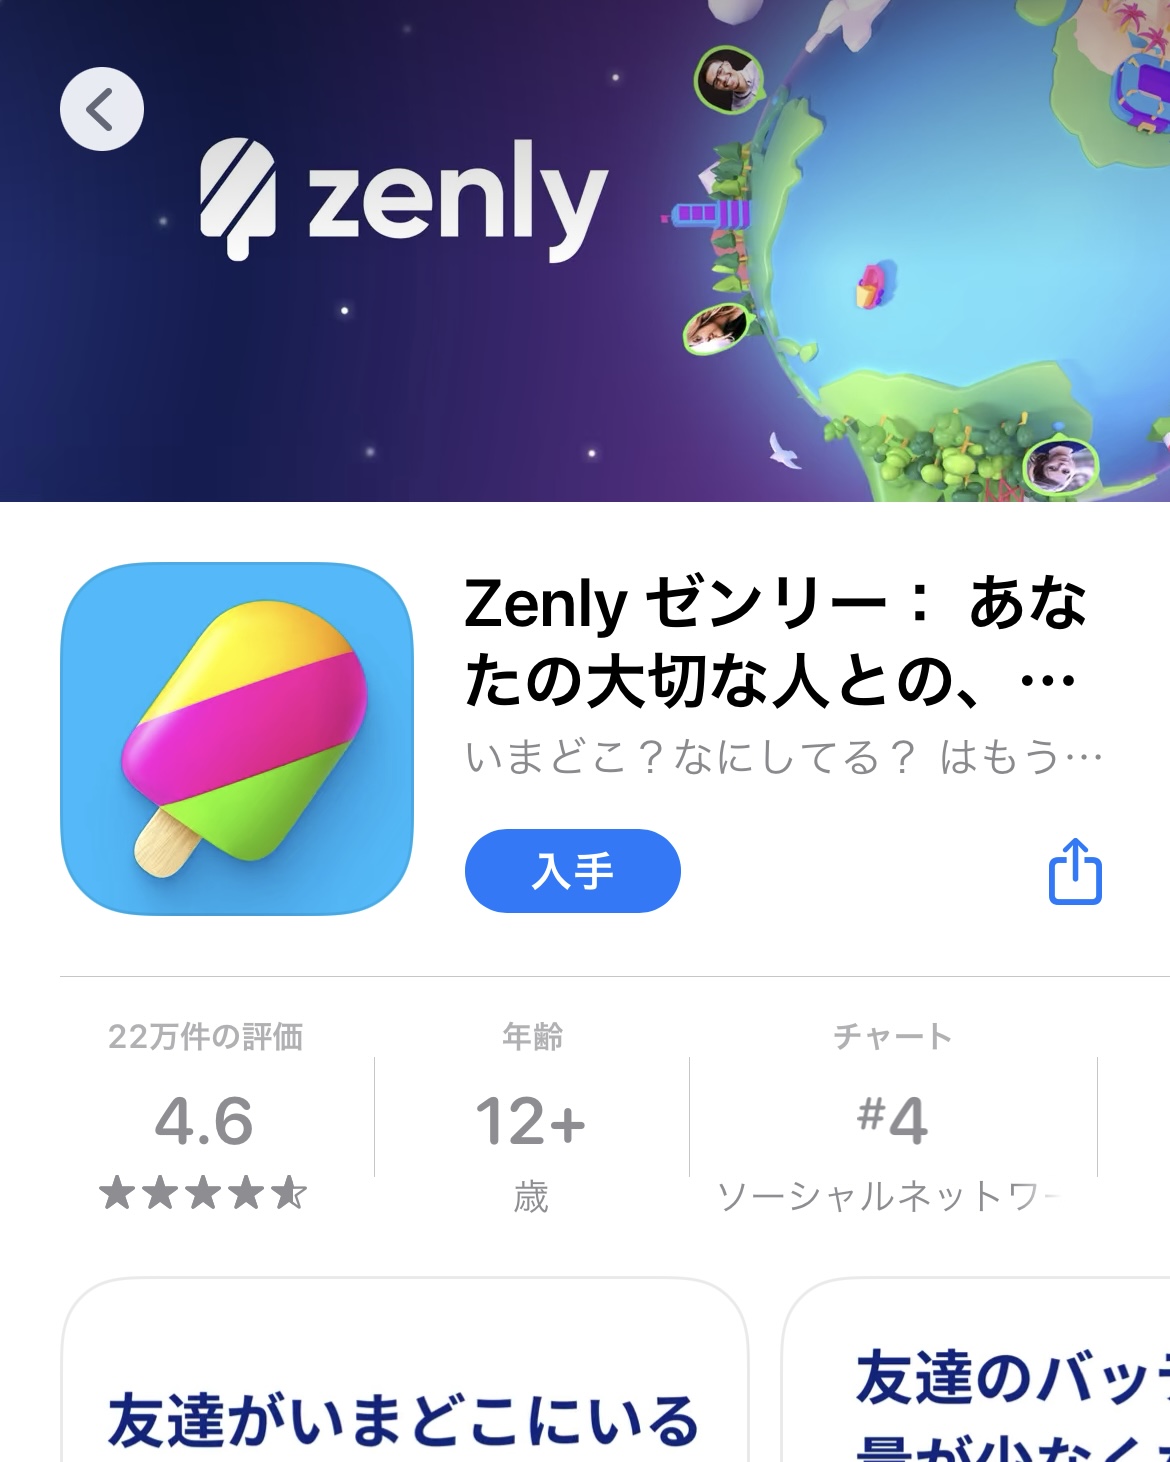 【位置情報共有アプリ】 Zenly(ゼンリー)が未成年を中心に人気! 利用中のお子さんはリスクを理解していますか?